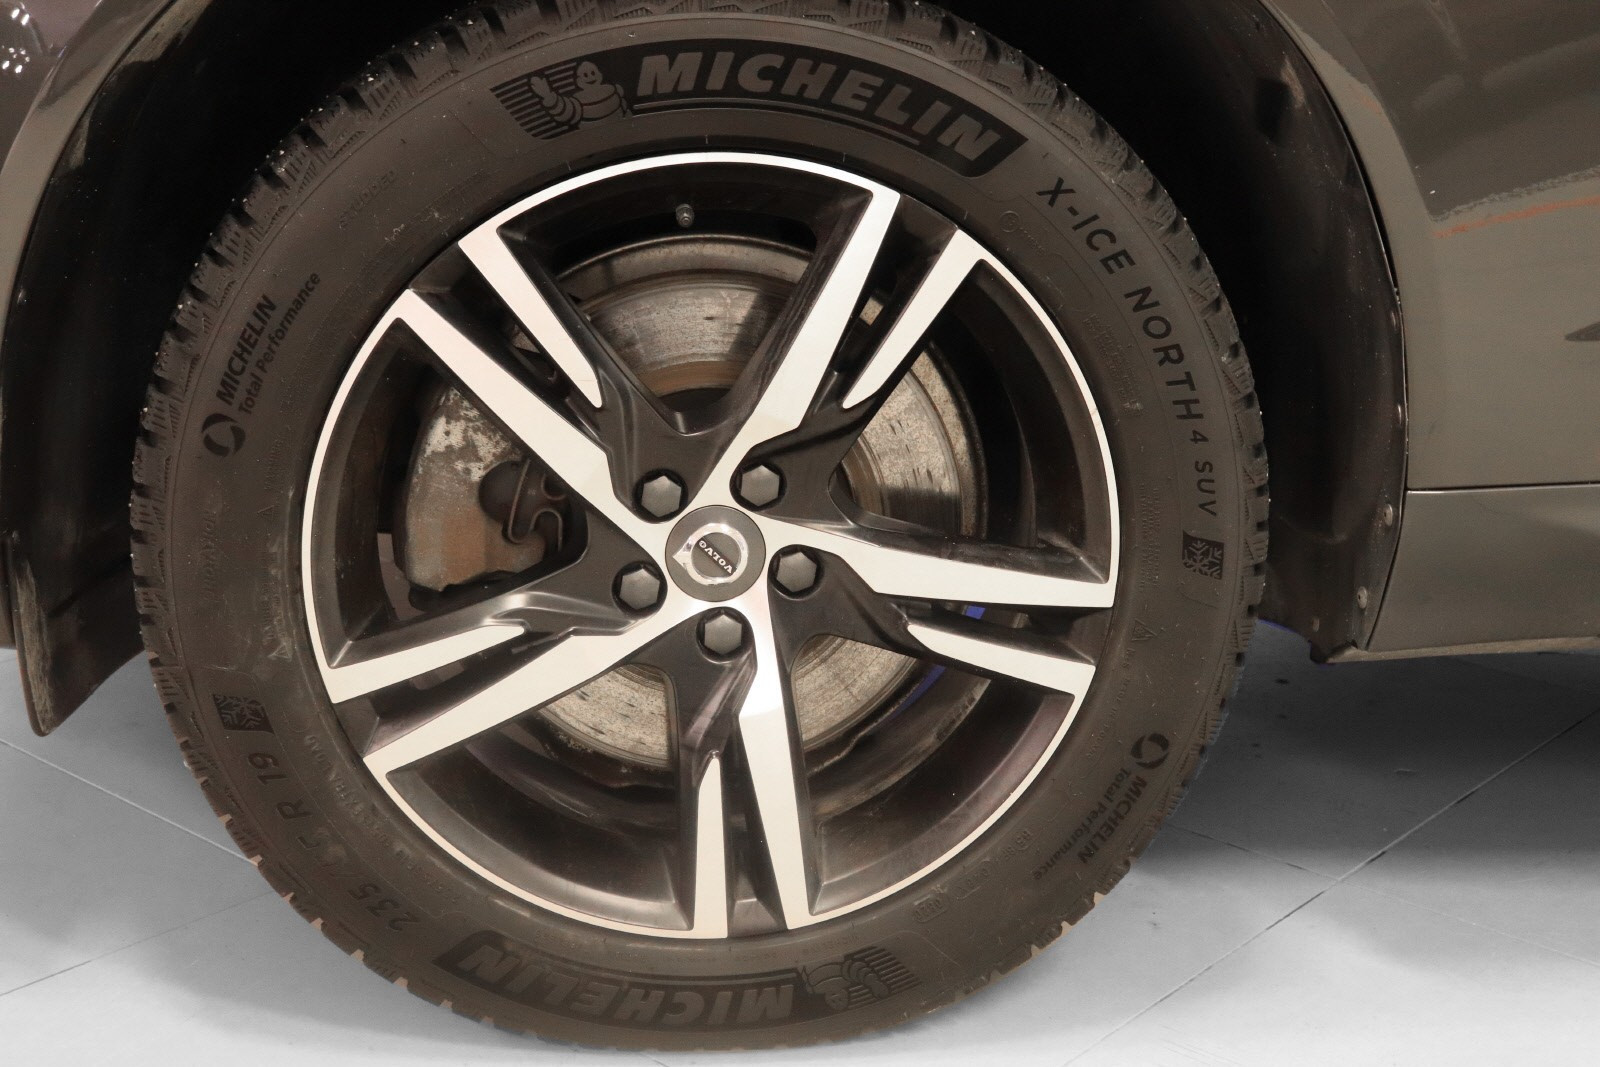 Orginale 19" feger på Michelin X-ice North SUV dekk med pigger